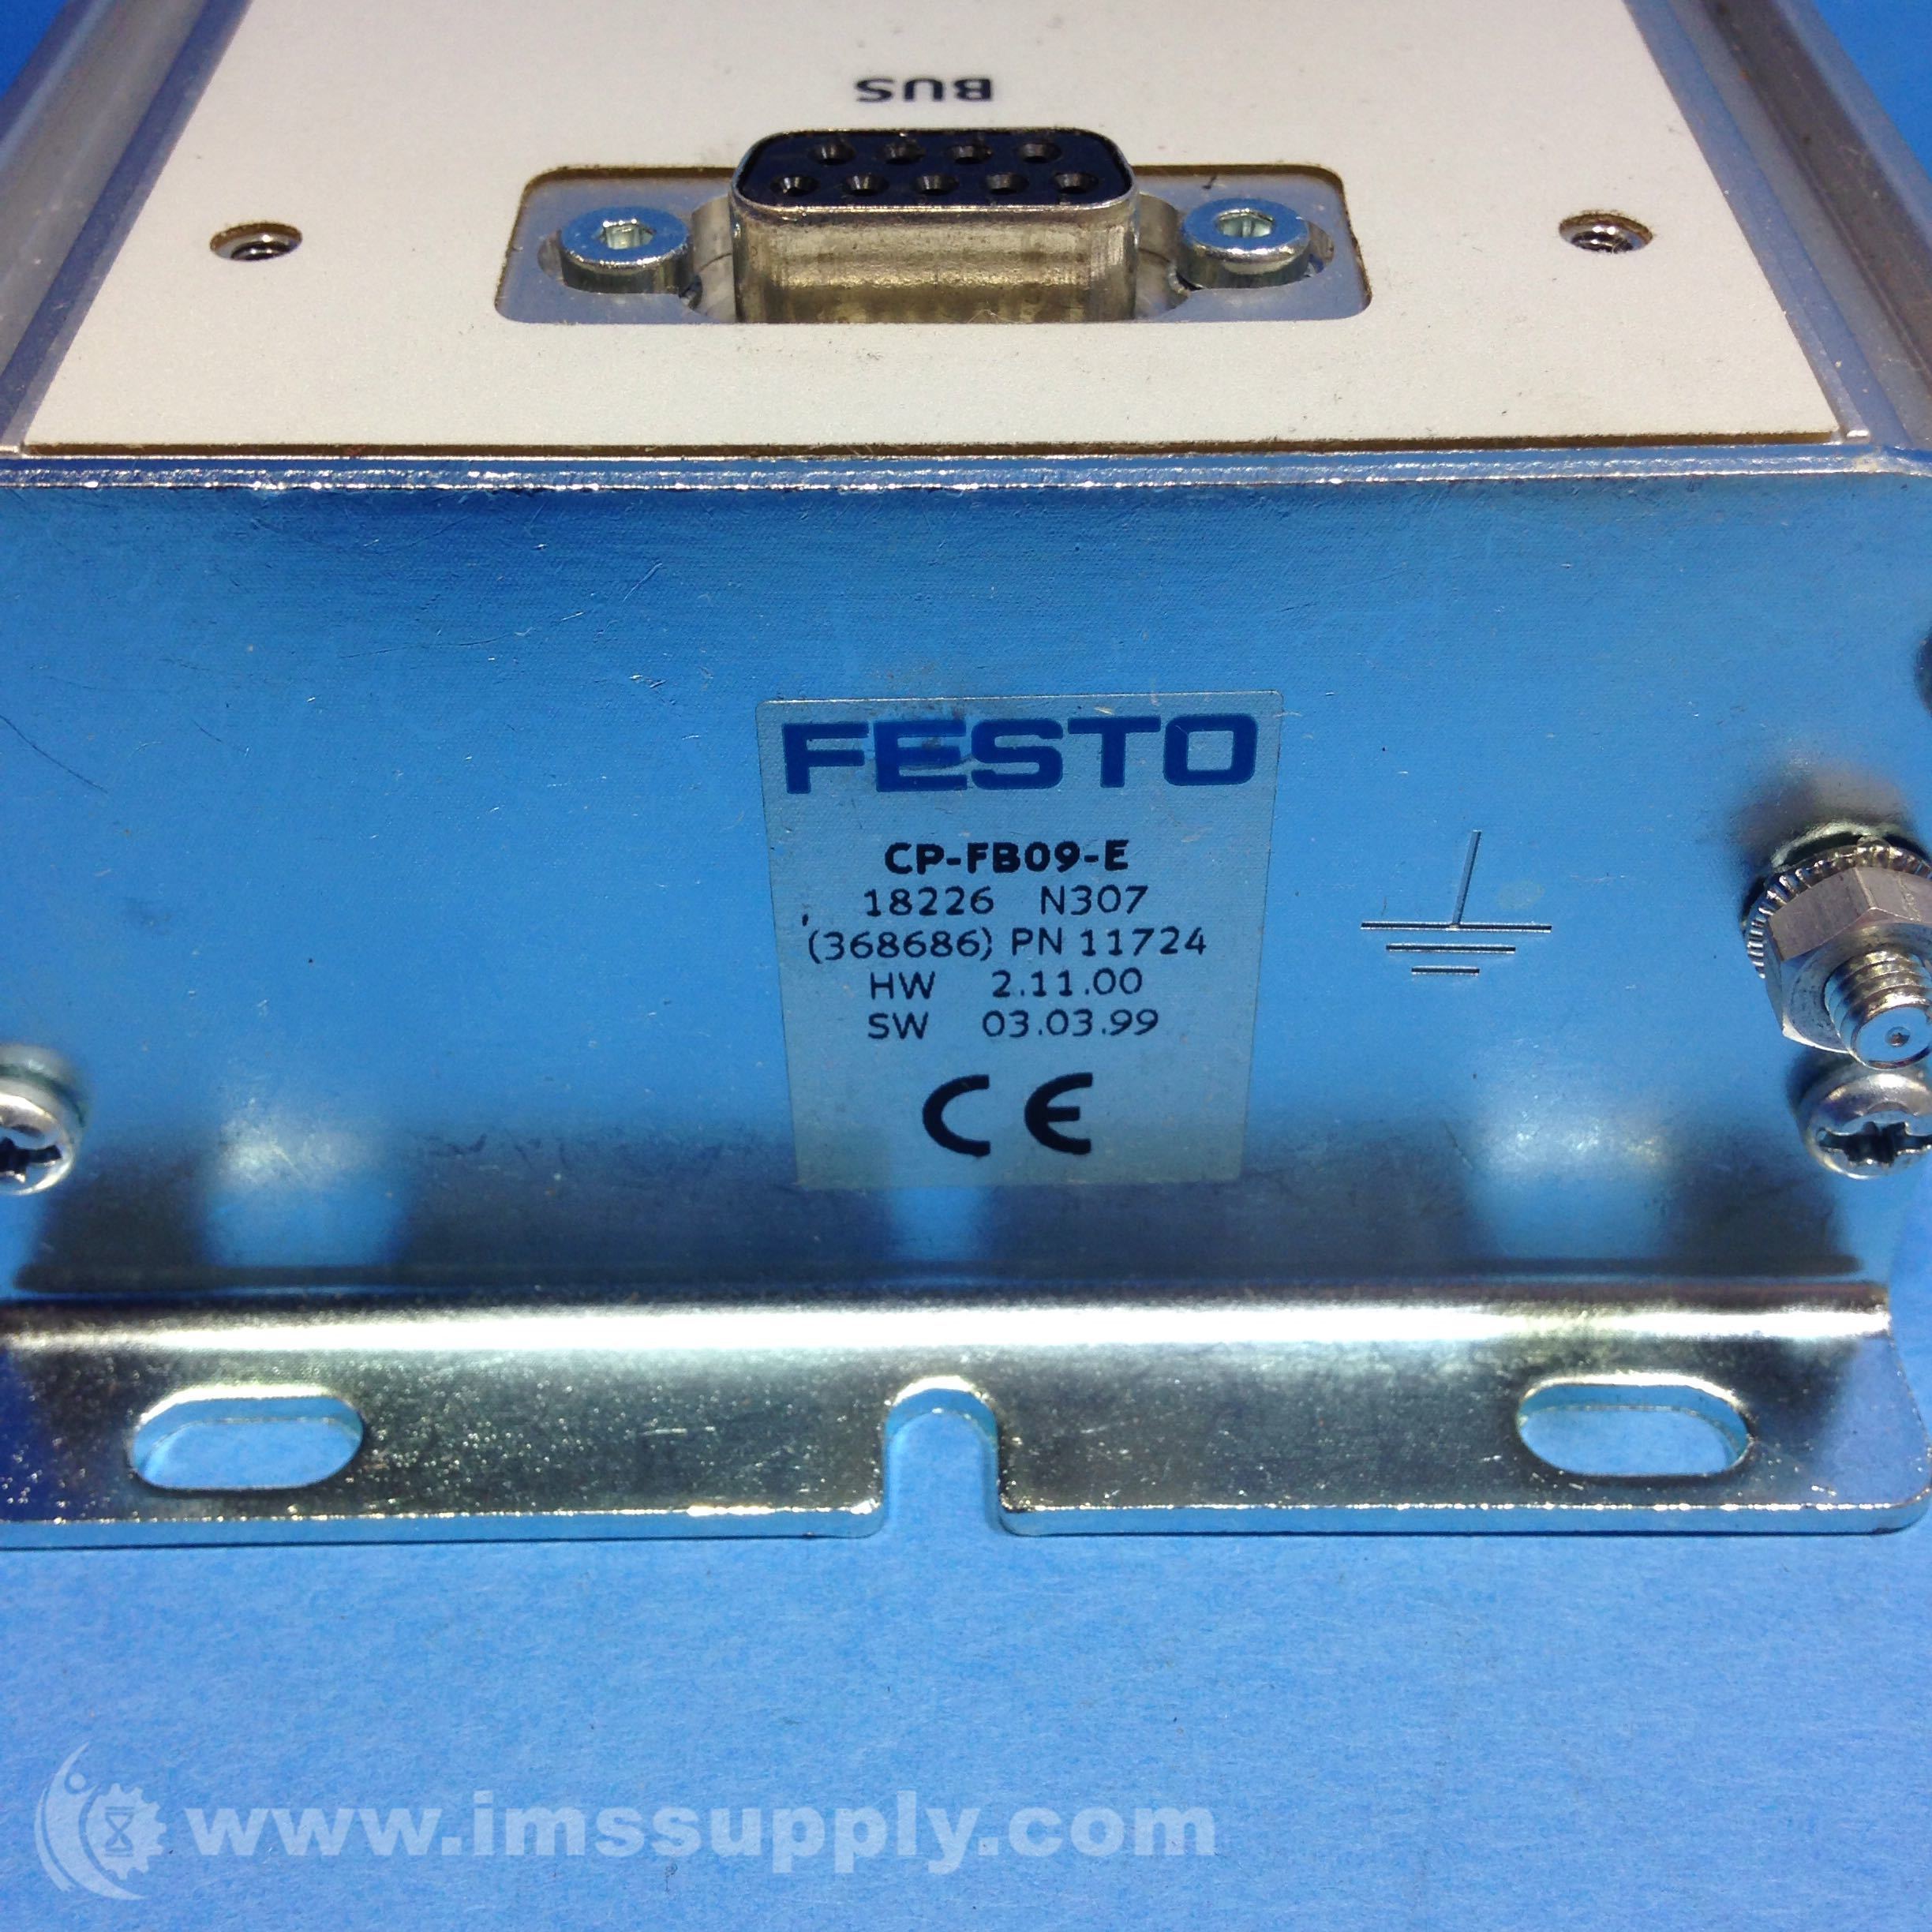 Festo CP-FB09-E Pneumatic Control *Fast Shipping* Warranty! 